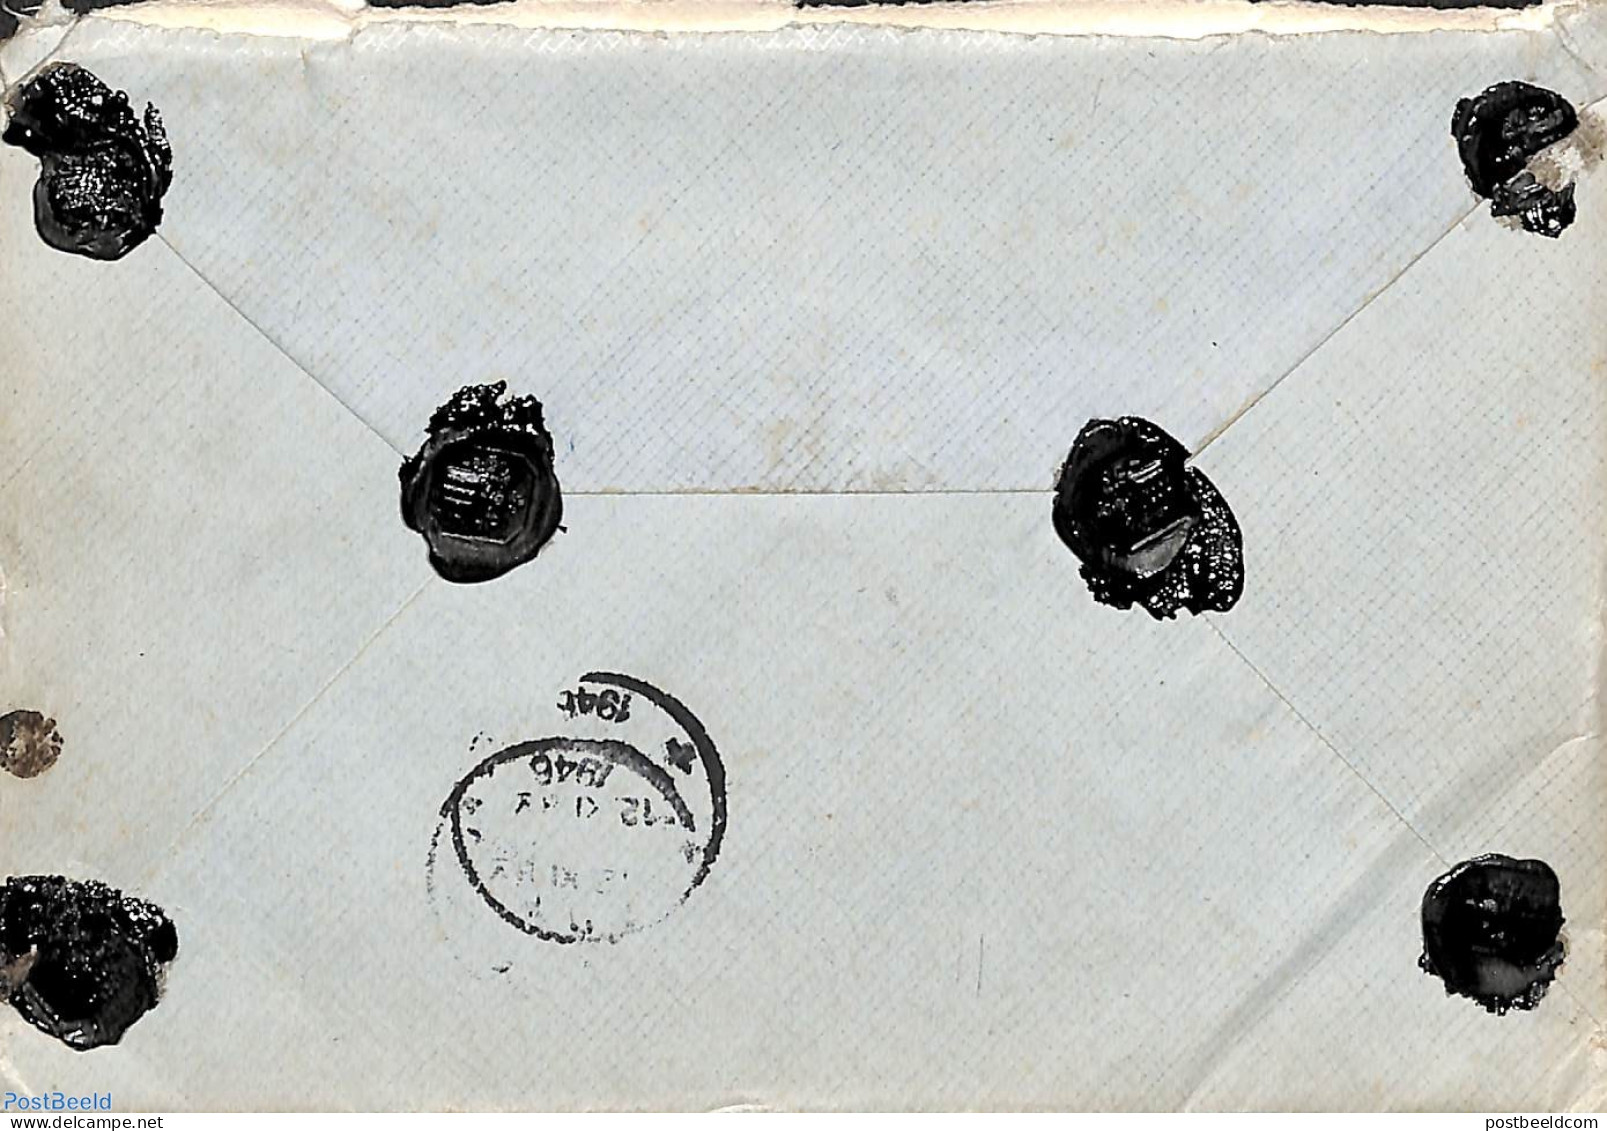 Netherlands 1946 Registered Valued Letter From Doorn To Ede, Postal History - Cartas & Documentos